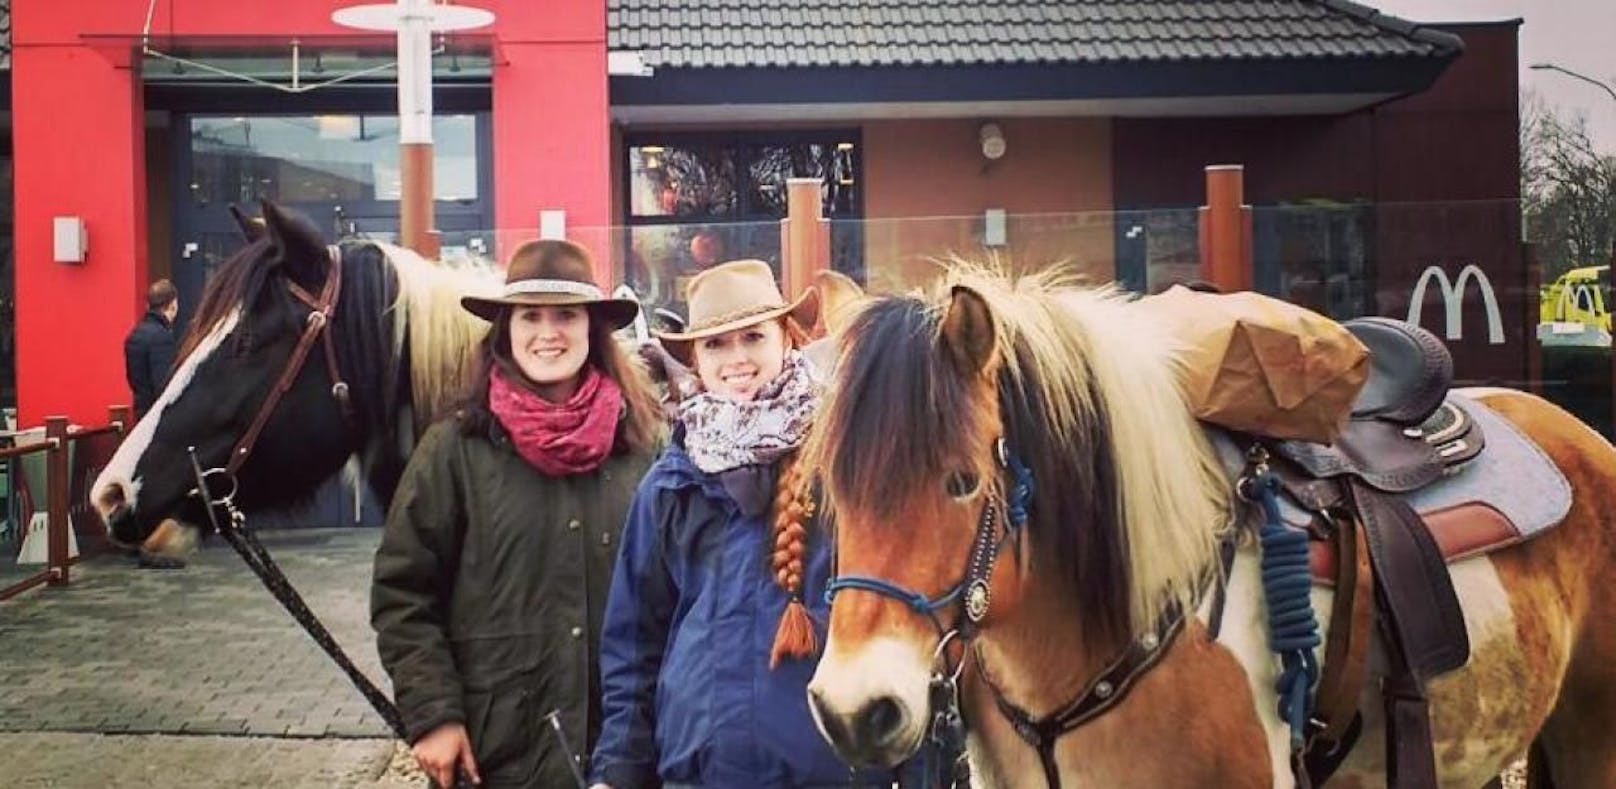 Wiener Cowgirls machen den McDrive zum "McRide"